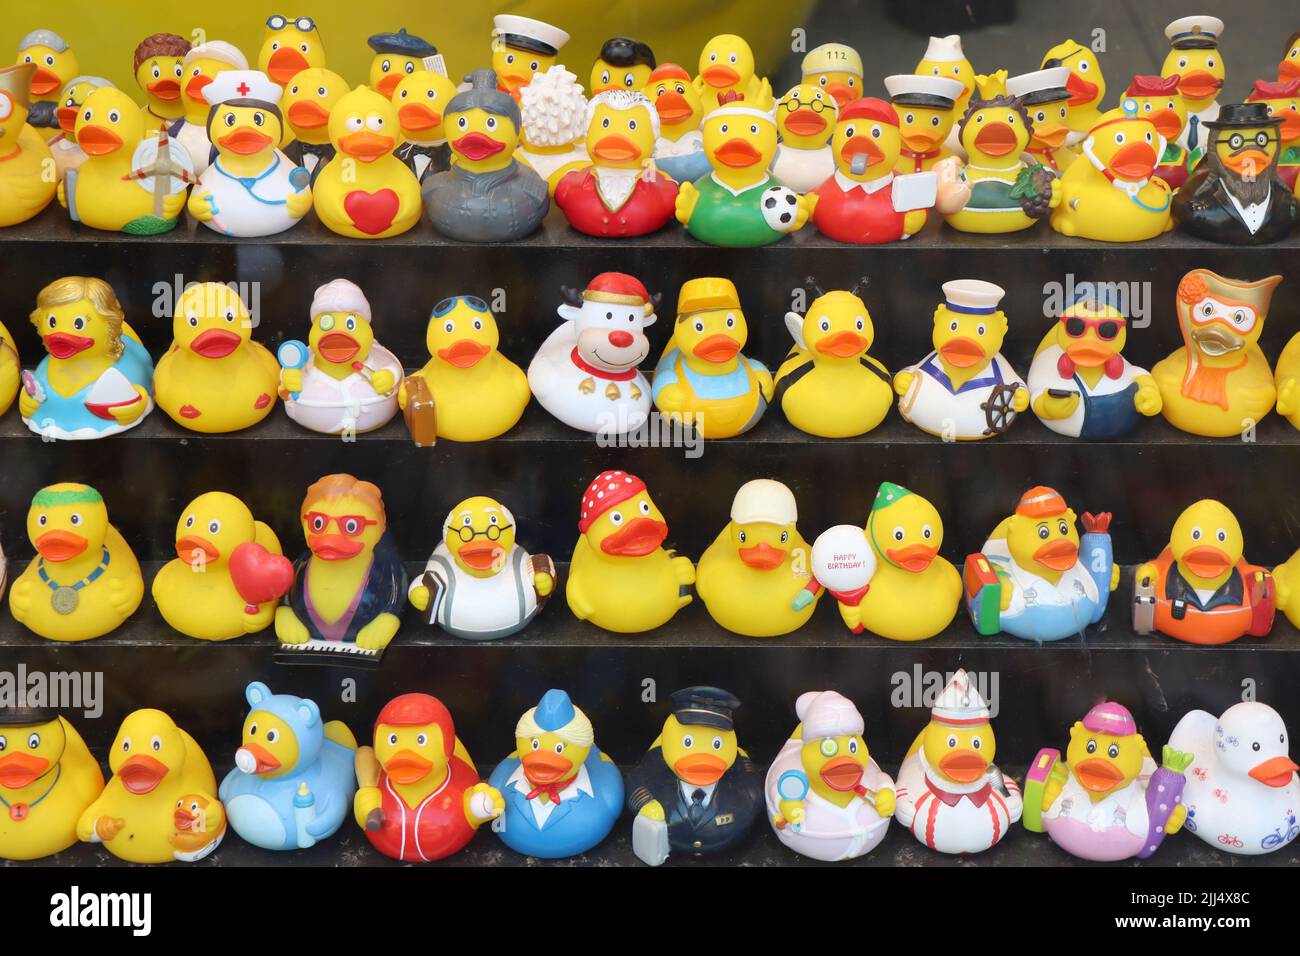 Ámsterdam, Países Bajos - 23 de junio de 2022: Tienda de pato de Ámsterdam. Variedad de divertidos patos de goma como un recuerdo en Ámsterdam. Foto de stock